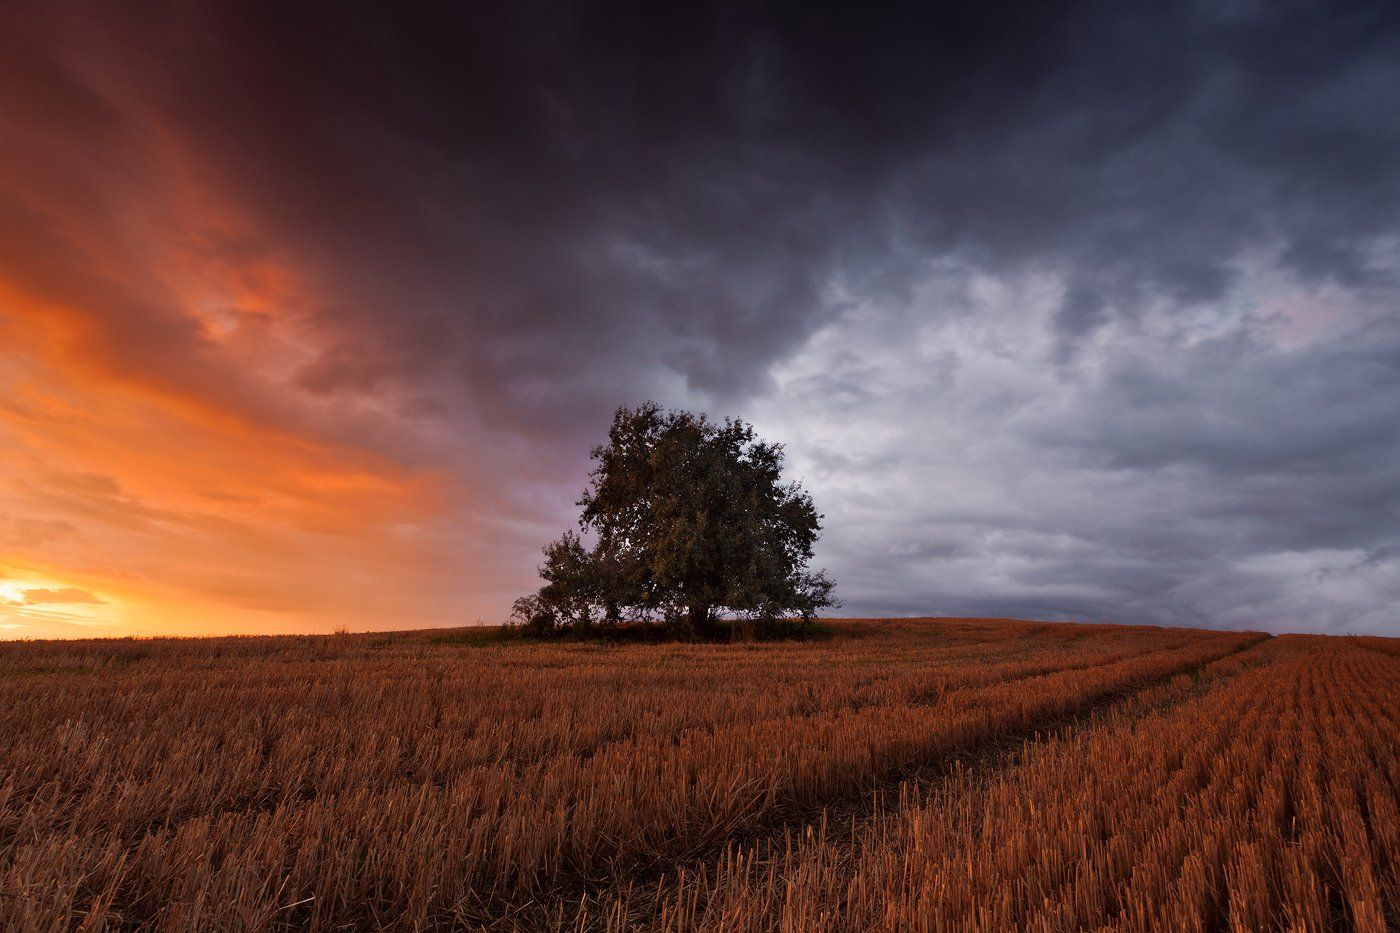 50d, Alone, Landscape, Olsztyn, Poland, Rain, Sokol, Storm, Sunset, Tree, Łukasz Sokół